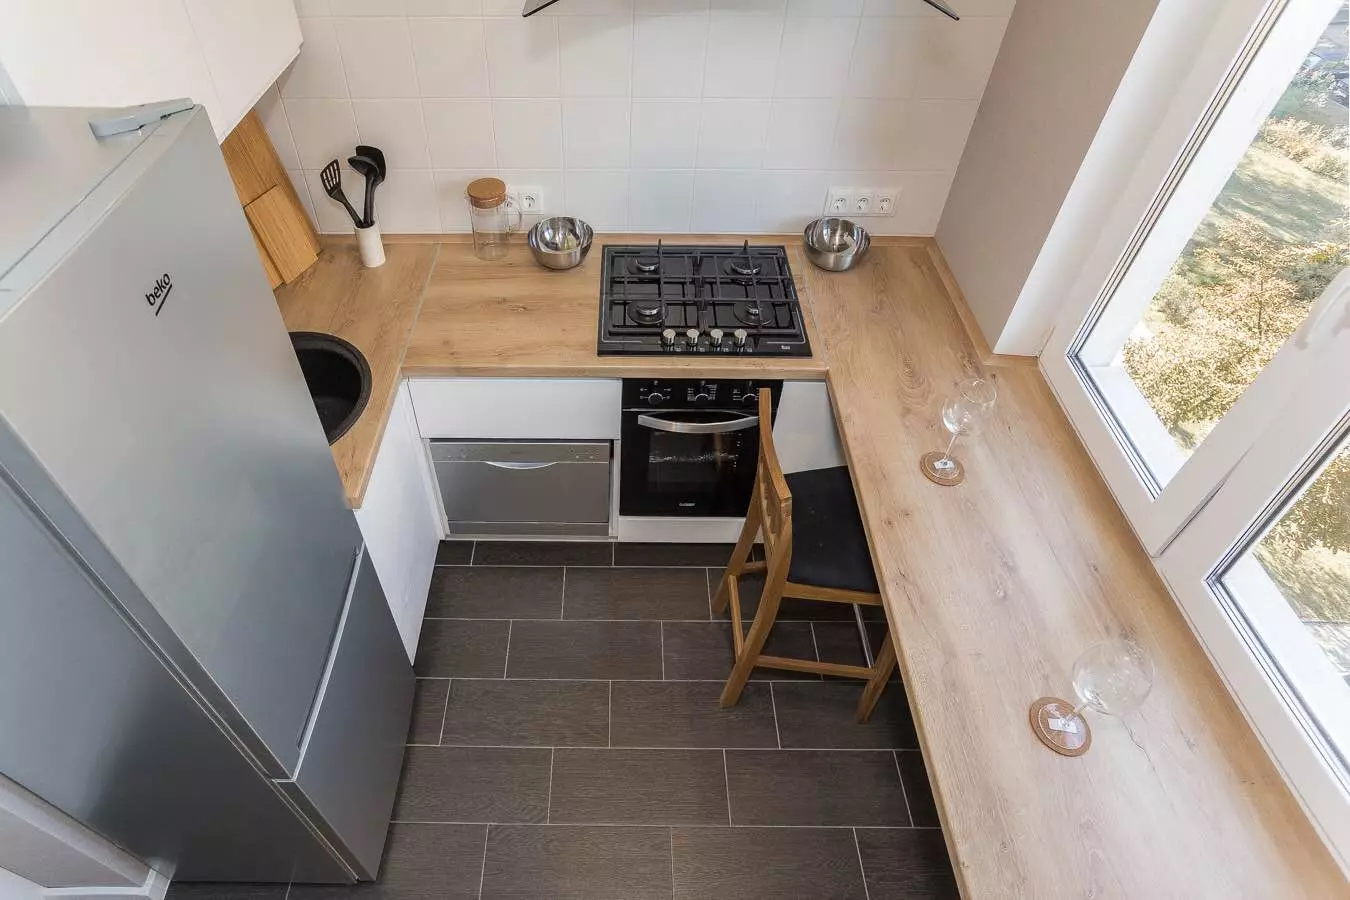 Blat din loc de ferestre: Cum altfel de a economisi spațiu pe o bucătărie mică?